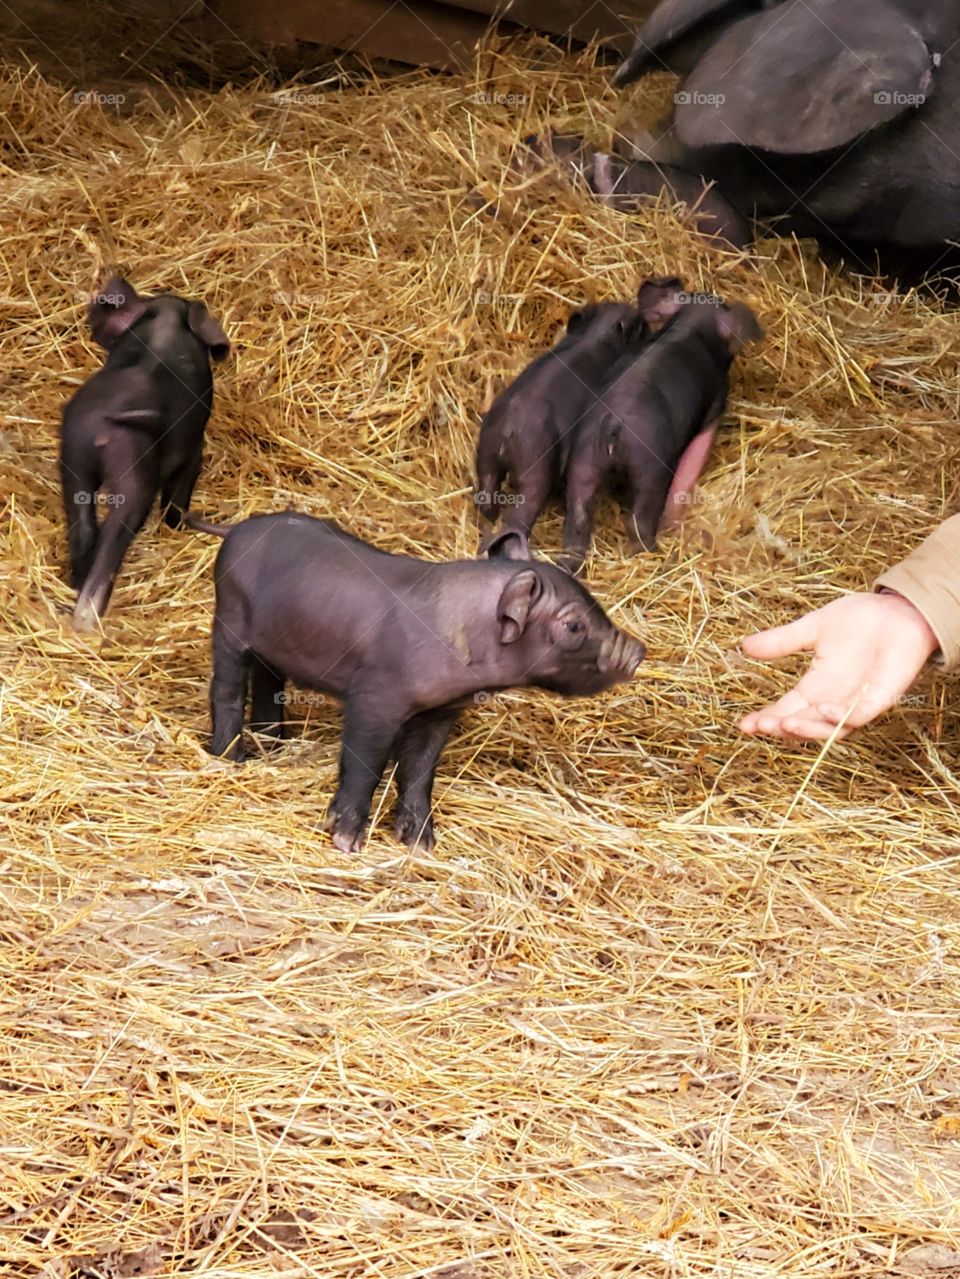 Piglets Meet Human